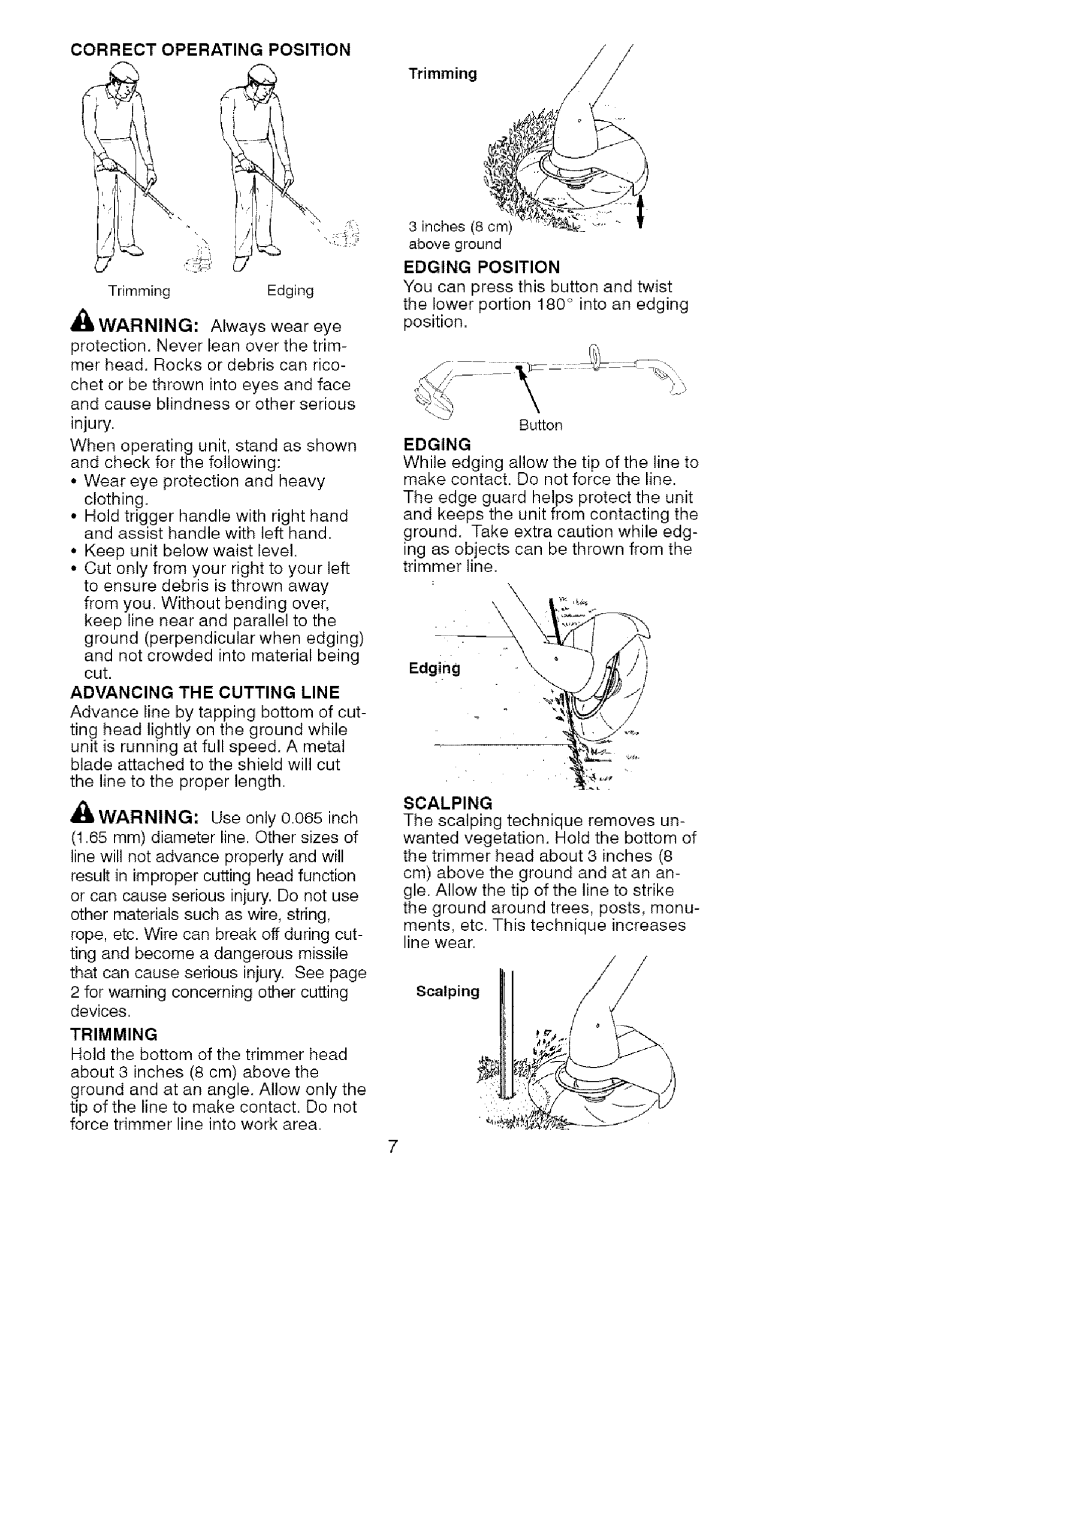 Craftsman 358.74529 instruction manual Trimmingj, Edging, Scalping 